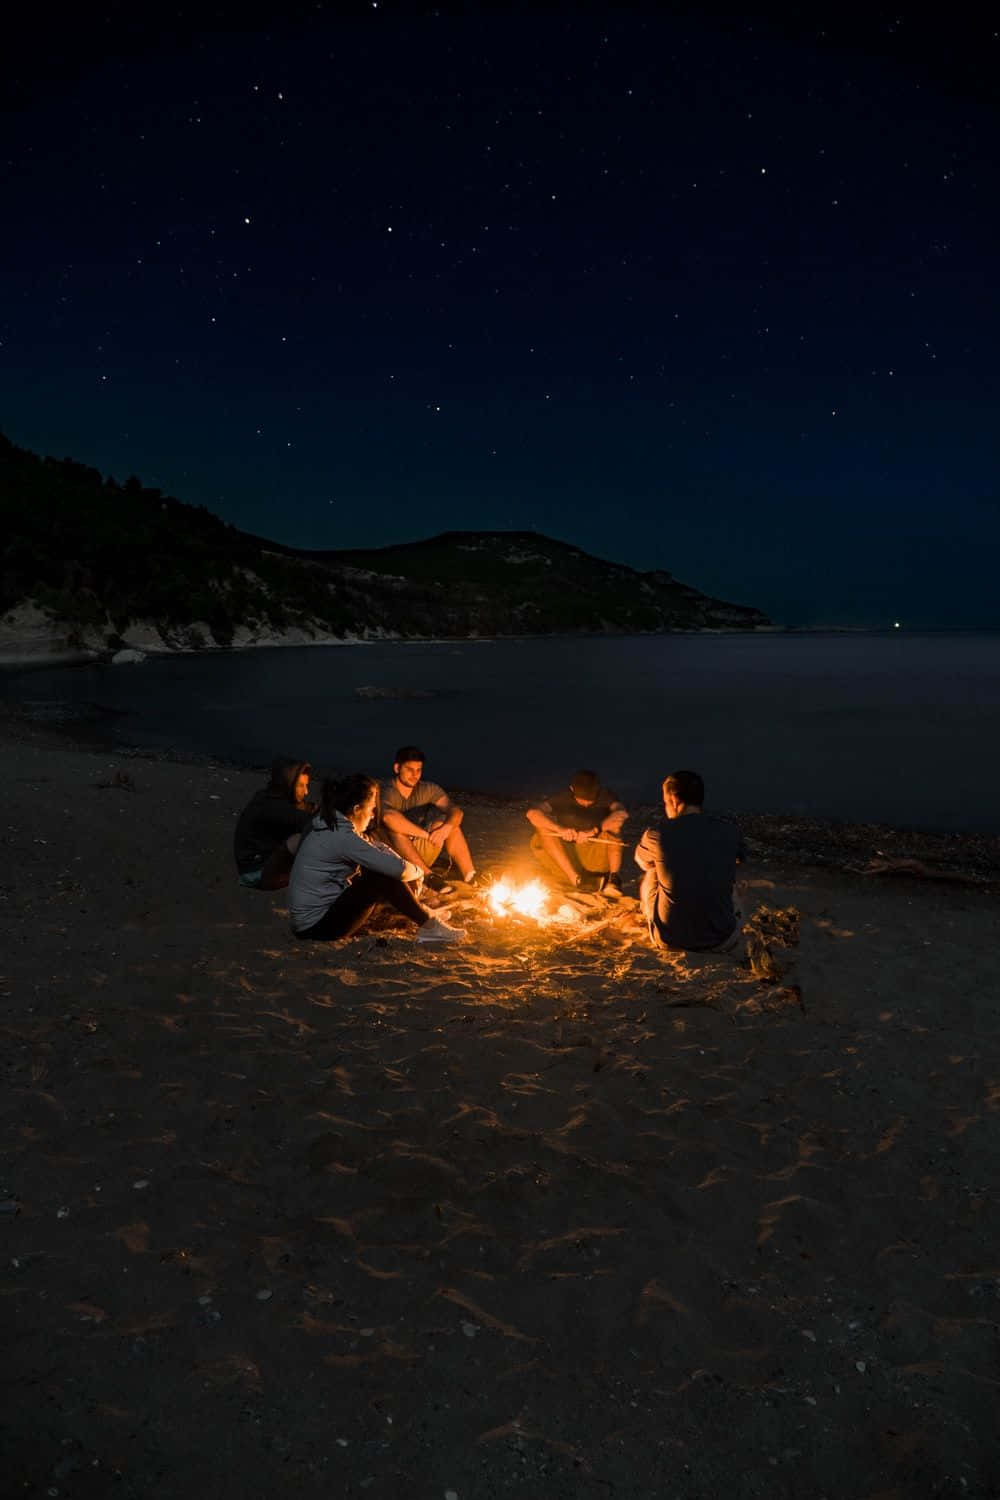 Beach Bonfire under a starry night sky Wallpaper